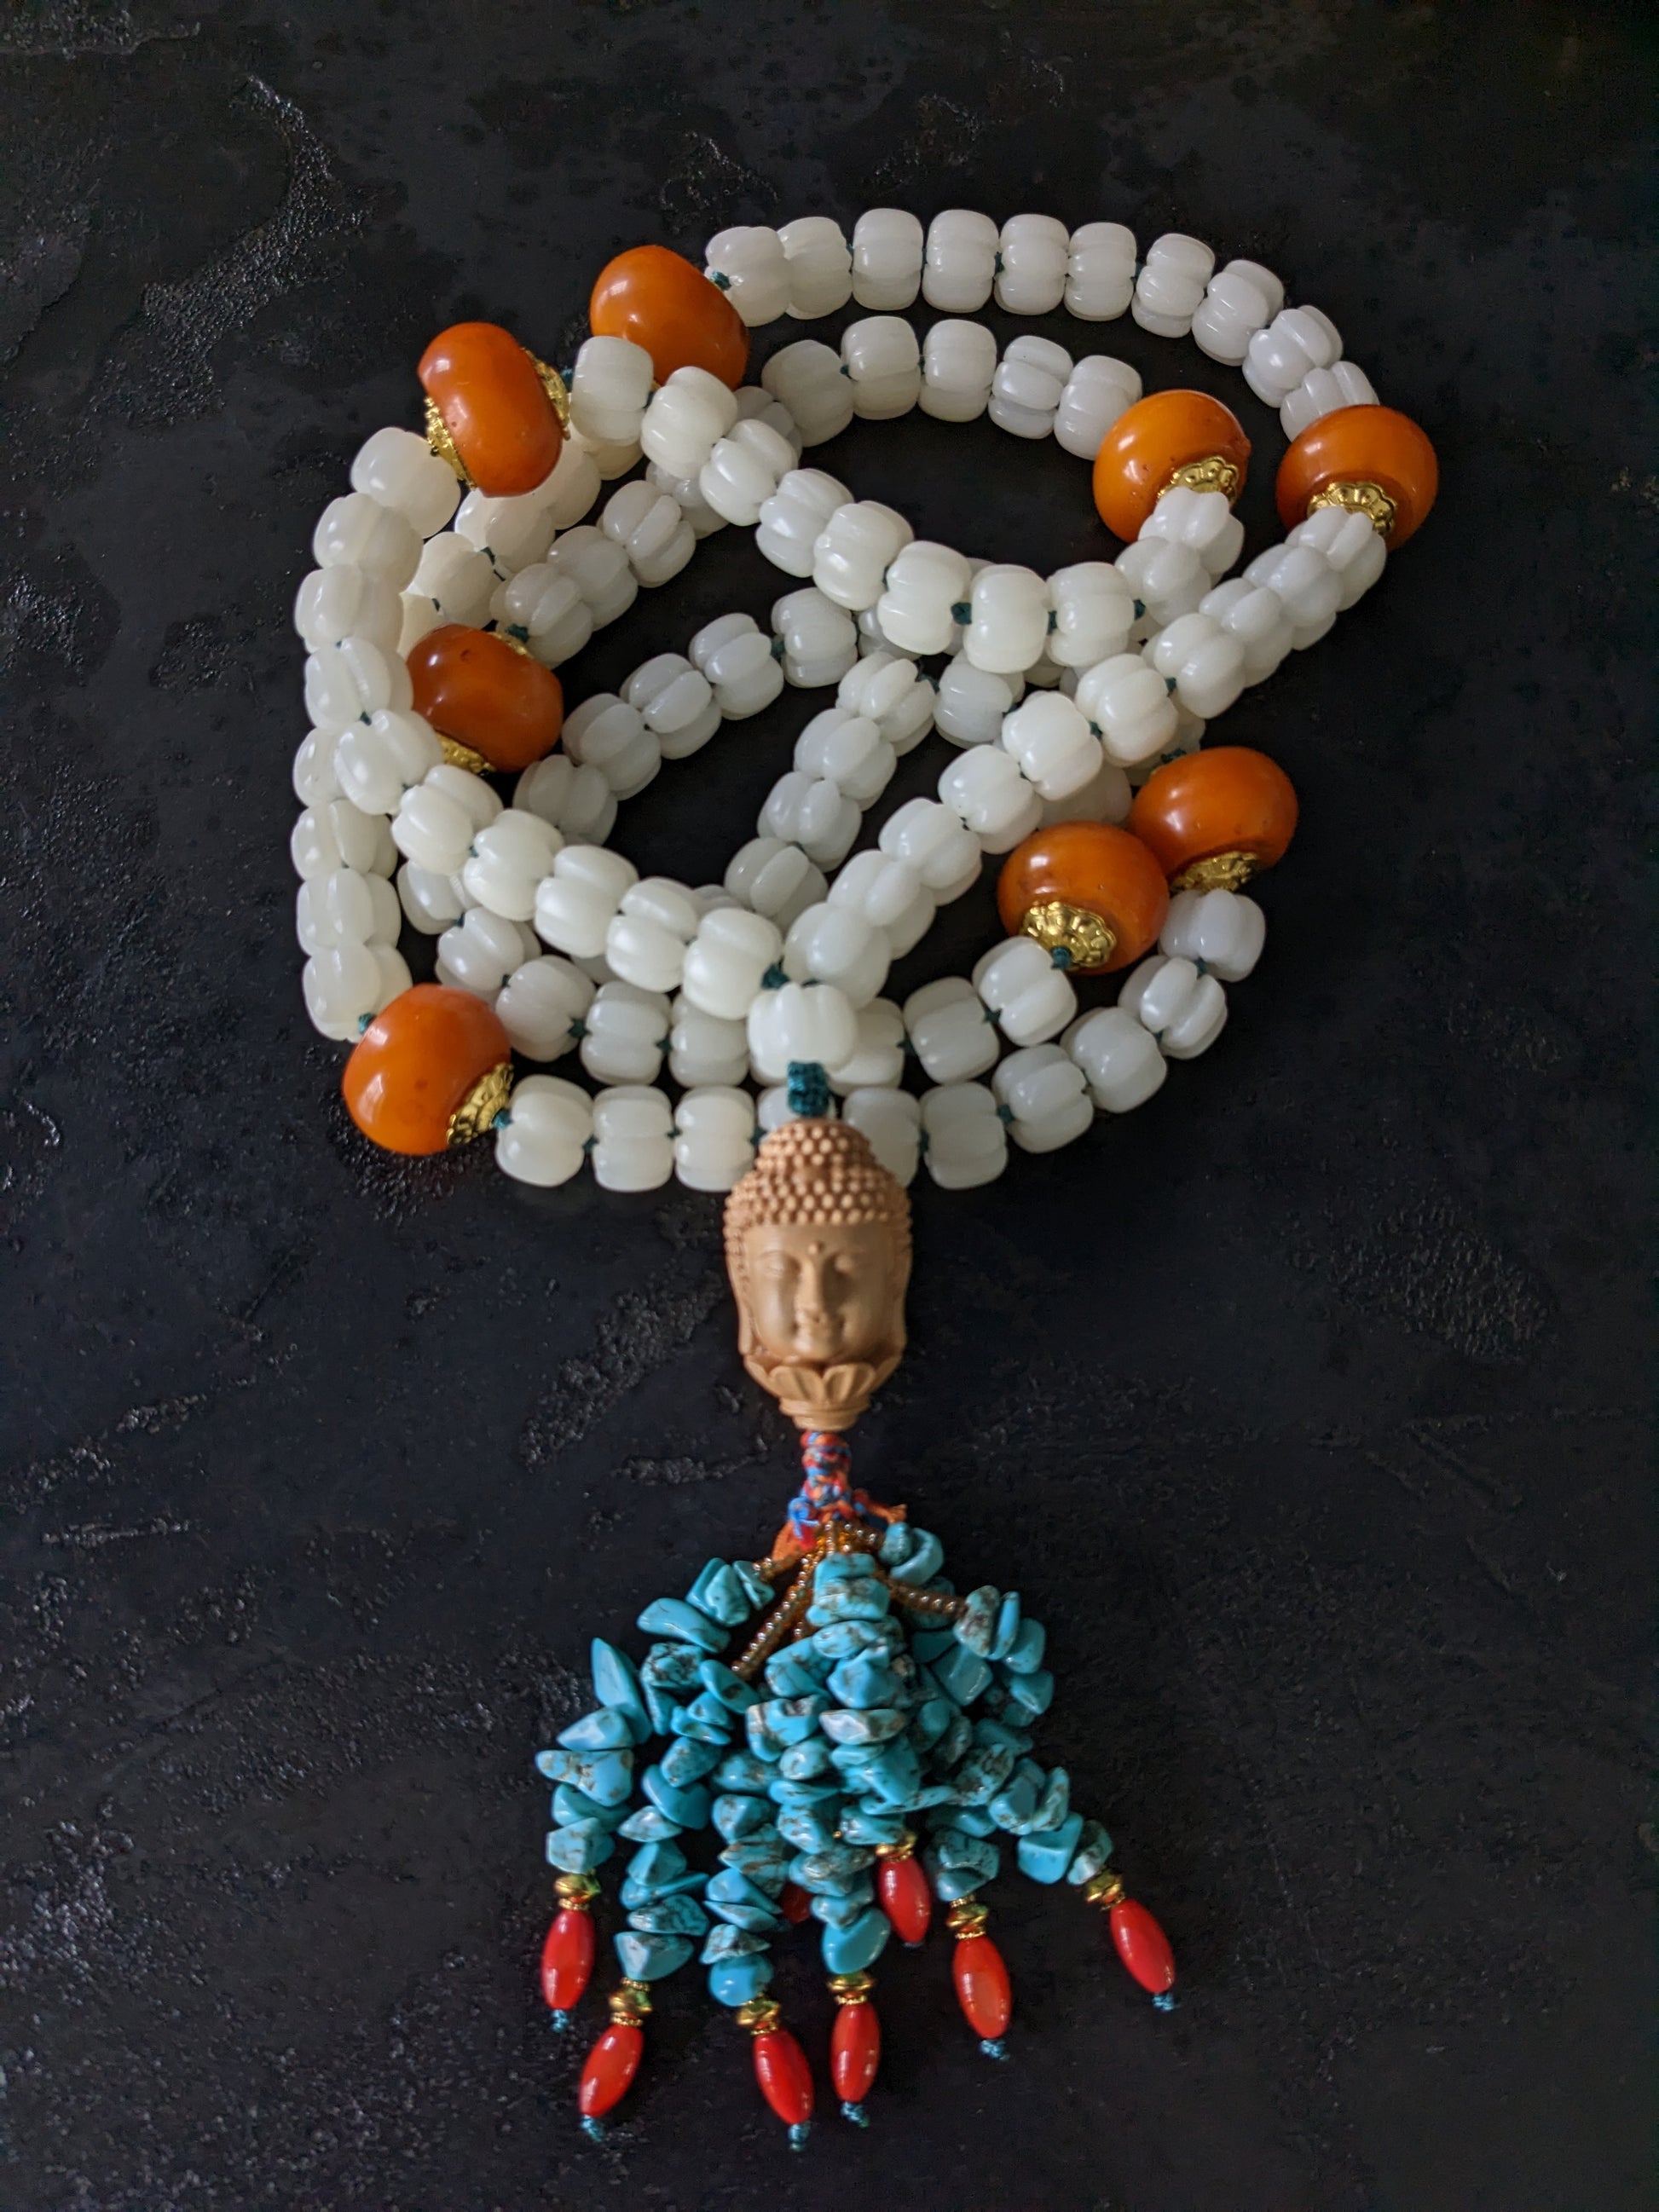 Mala traditionnel tibétain de 108 perles sculptées et orné d'une tête de bouddha sculptée